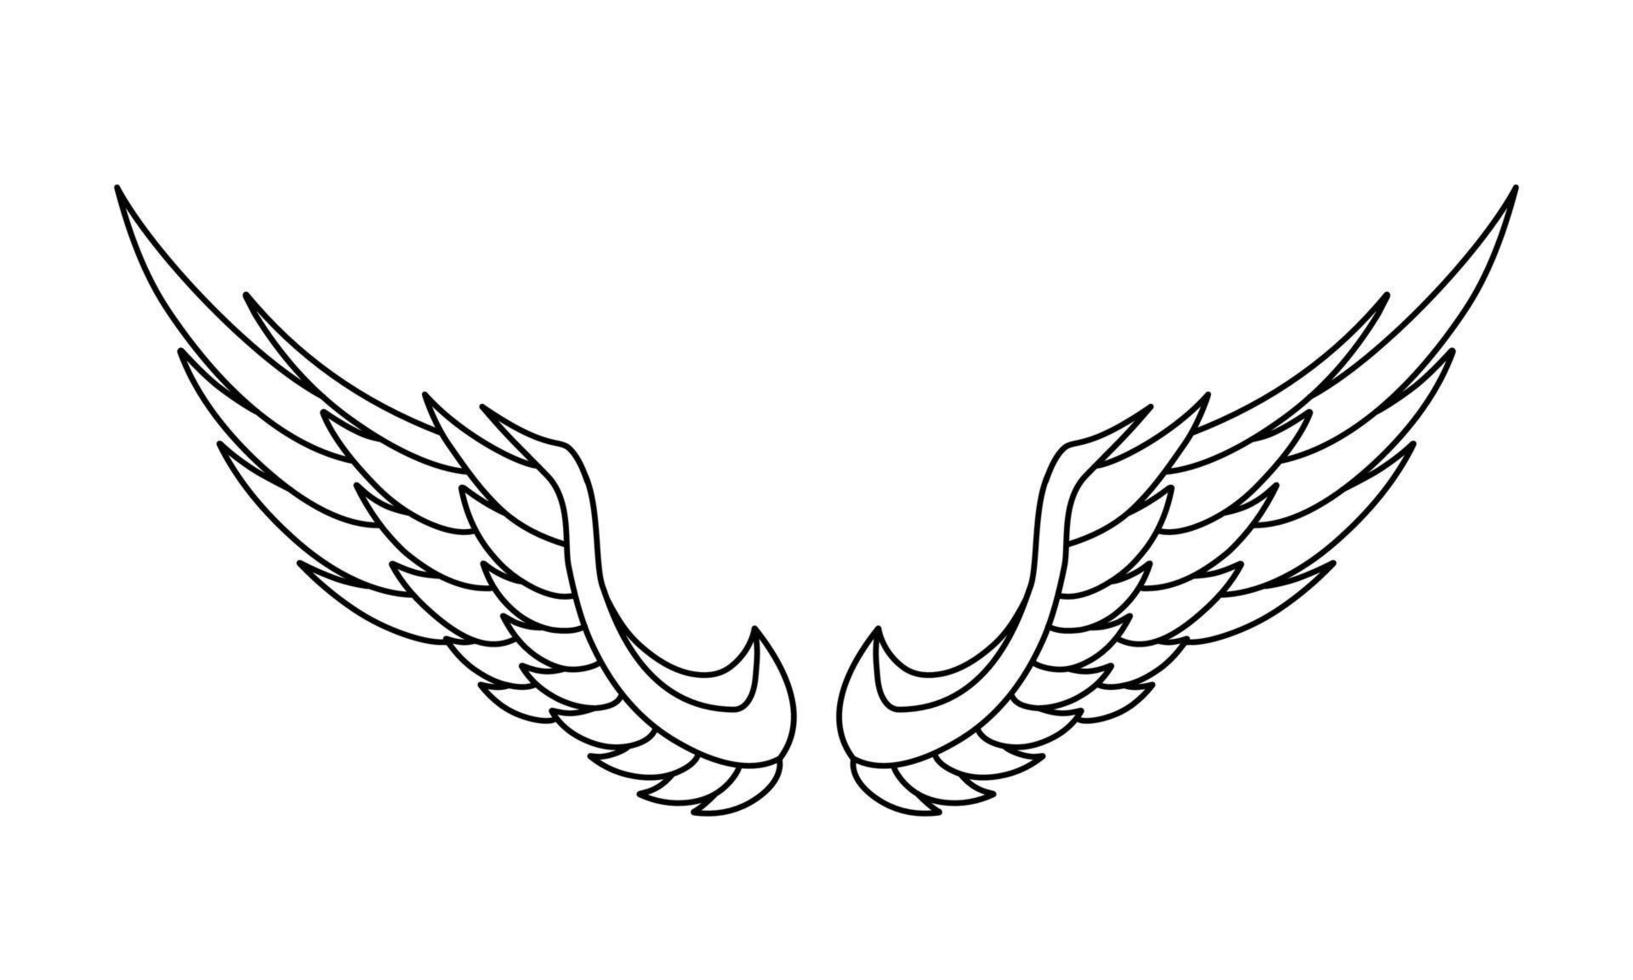 vrij vector engel Vleugels lijn kunst stijl